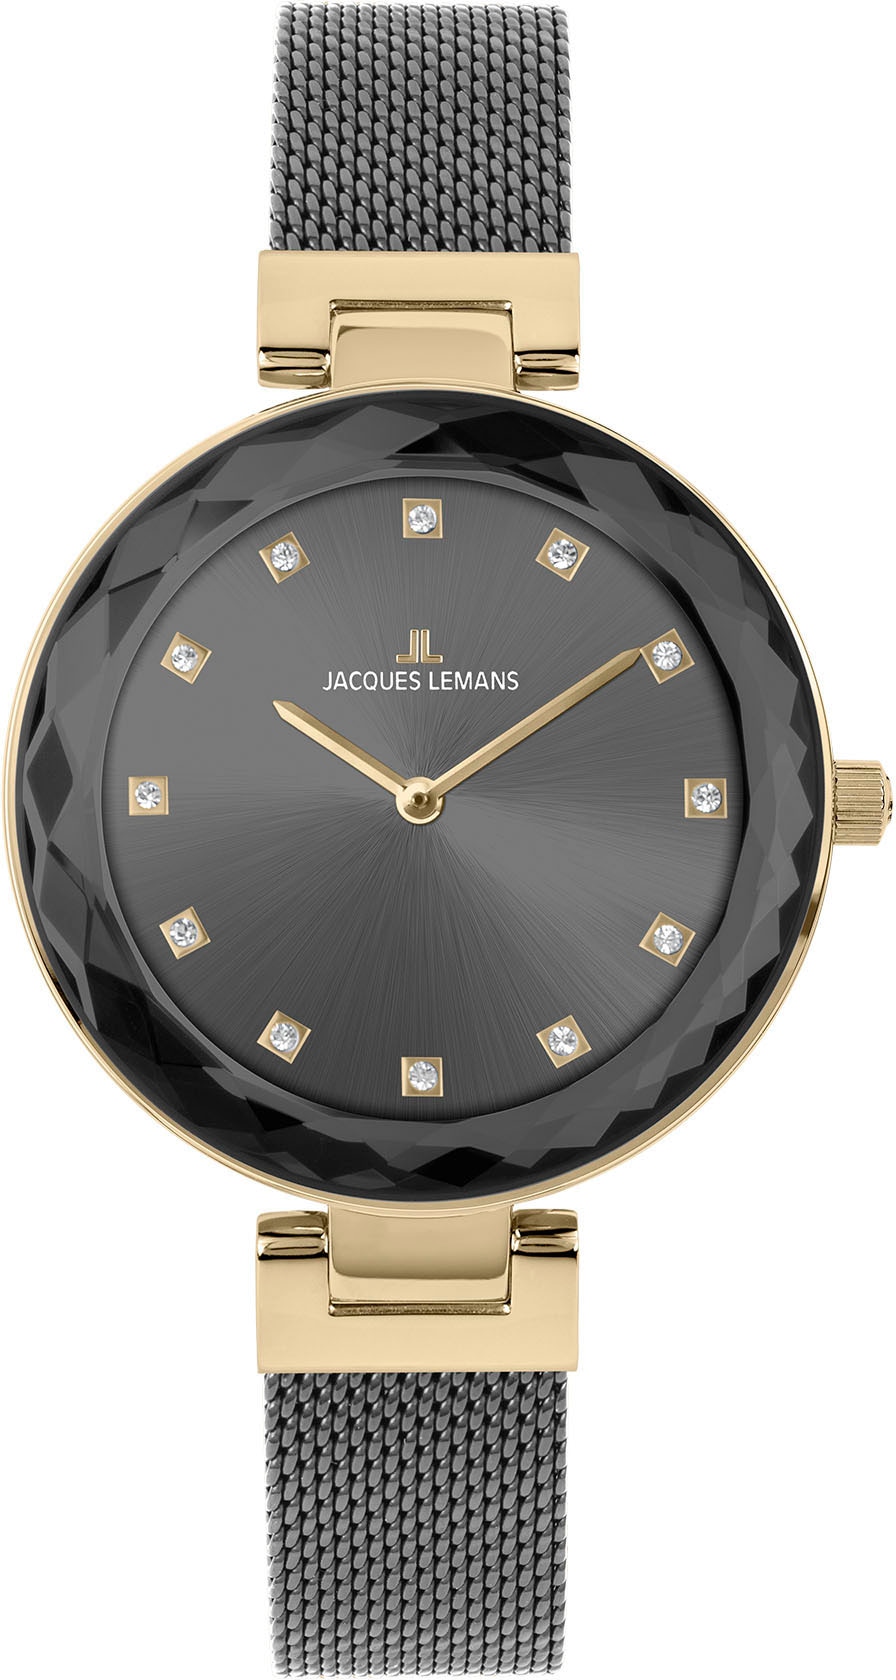 Jacques Lemans Uhren günstig kaufen ▻